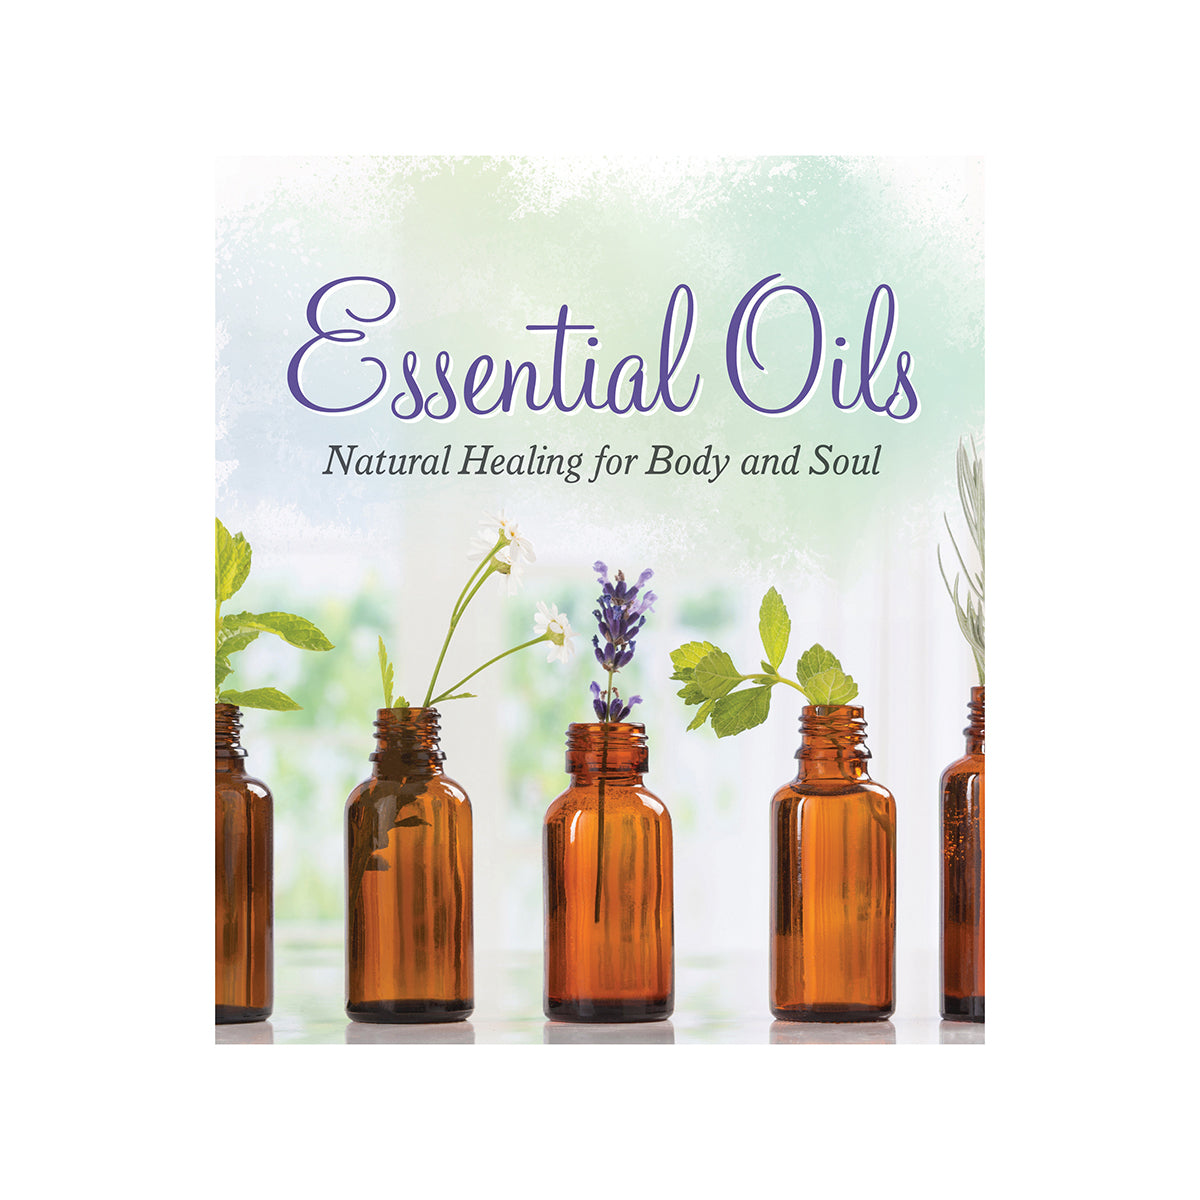 Essential Oils